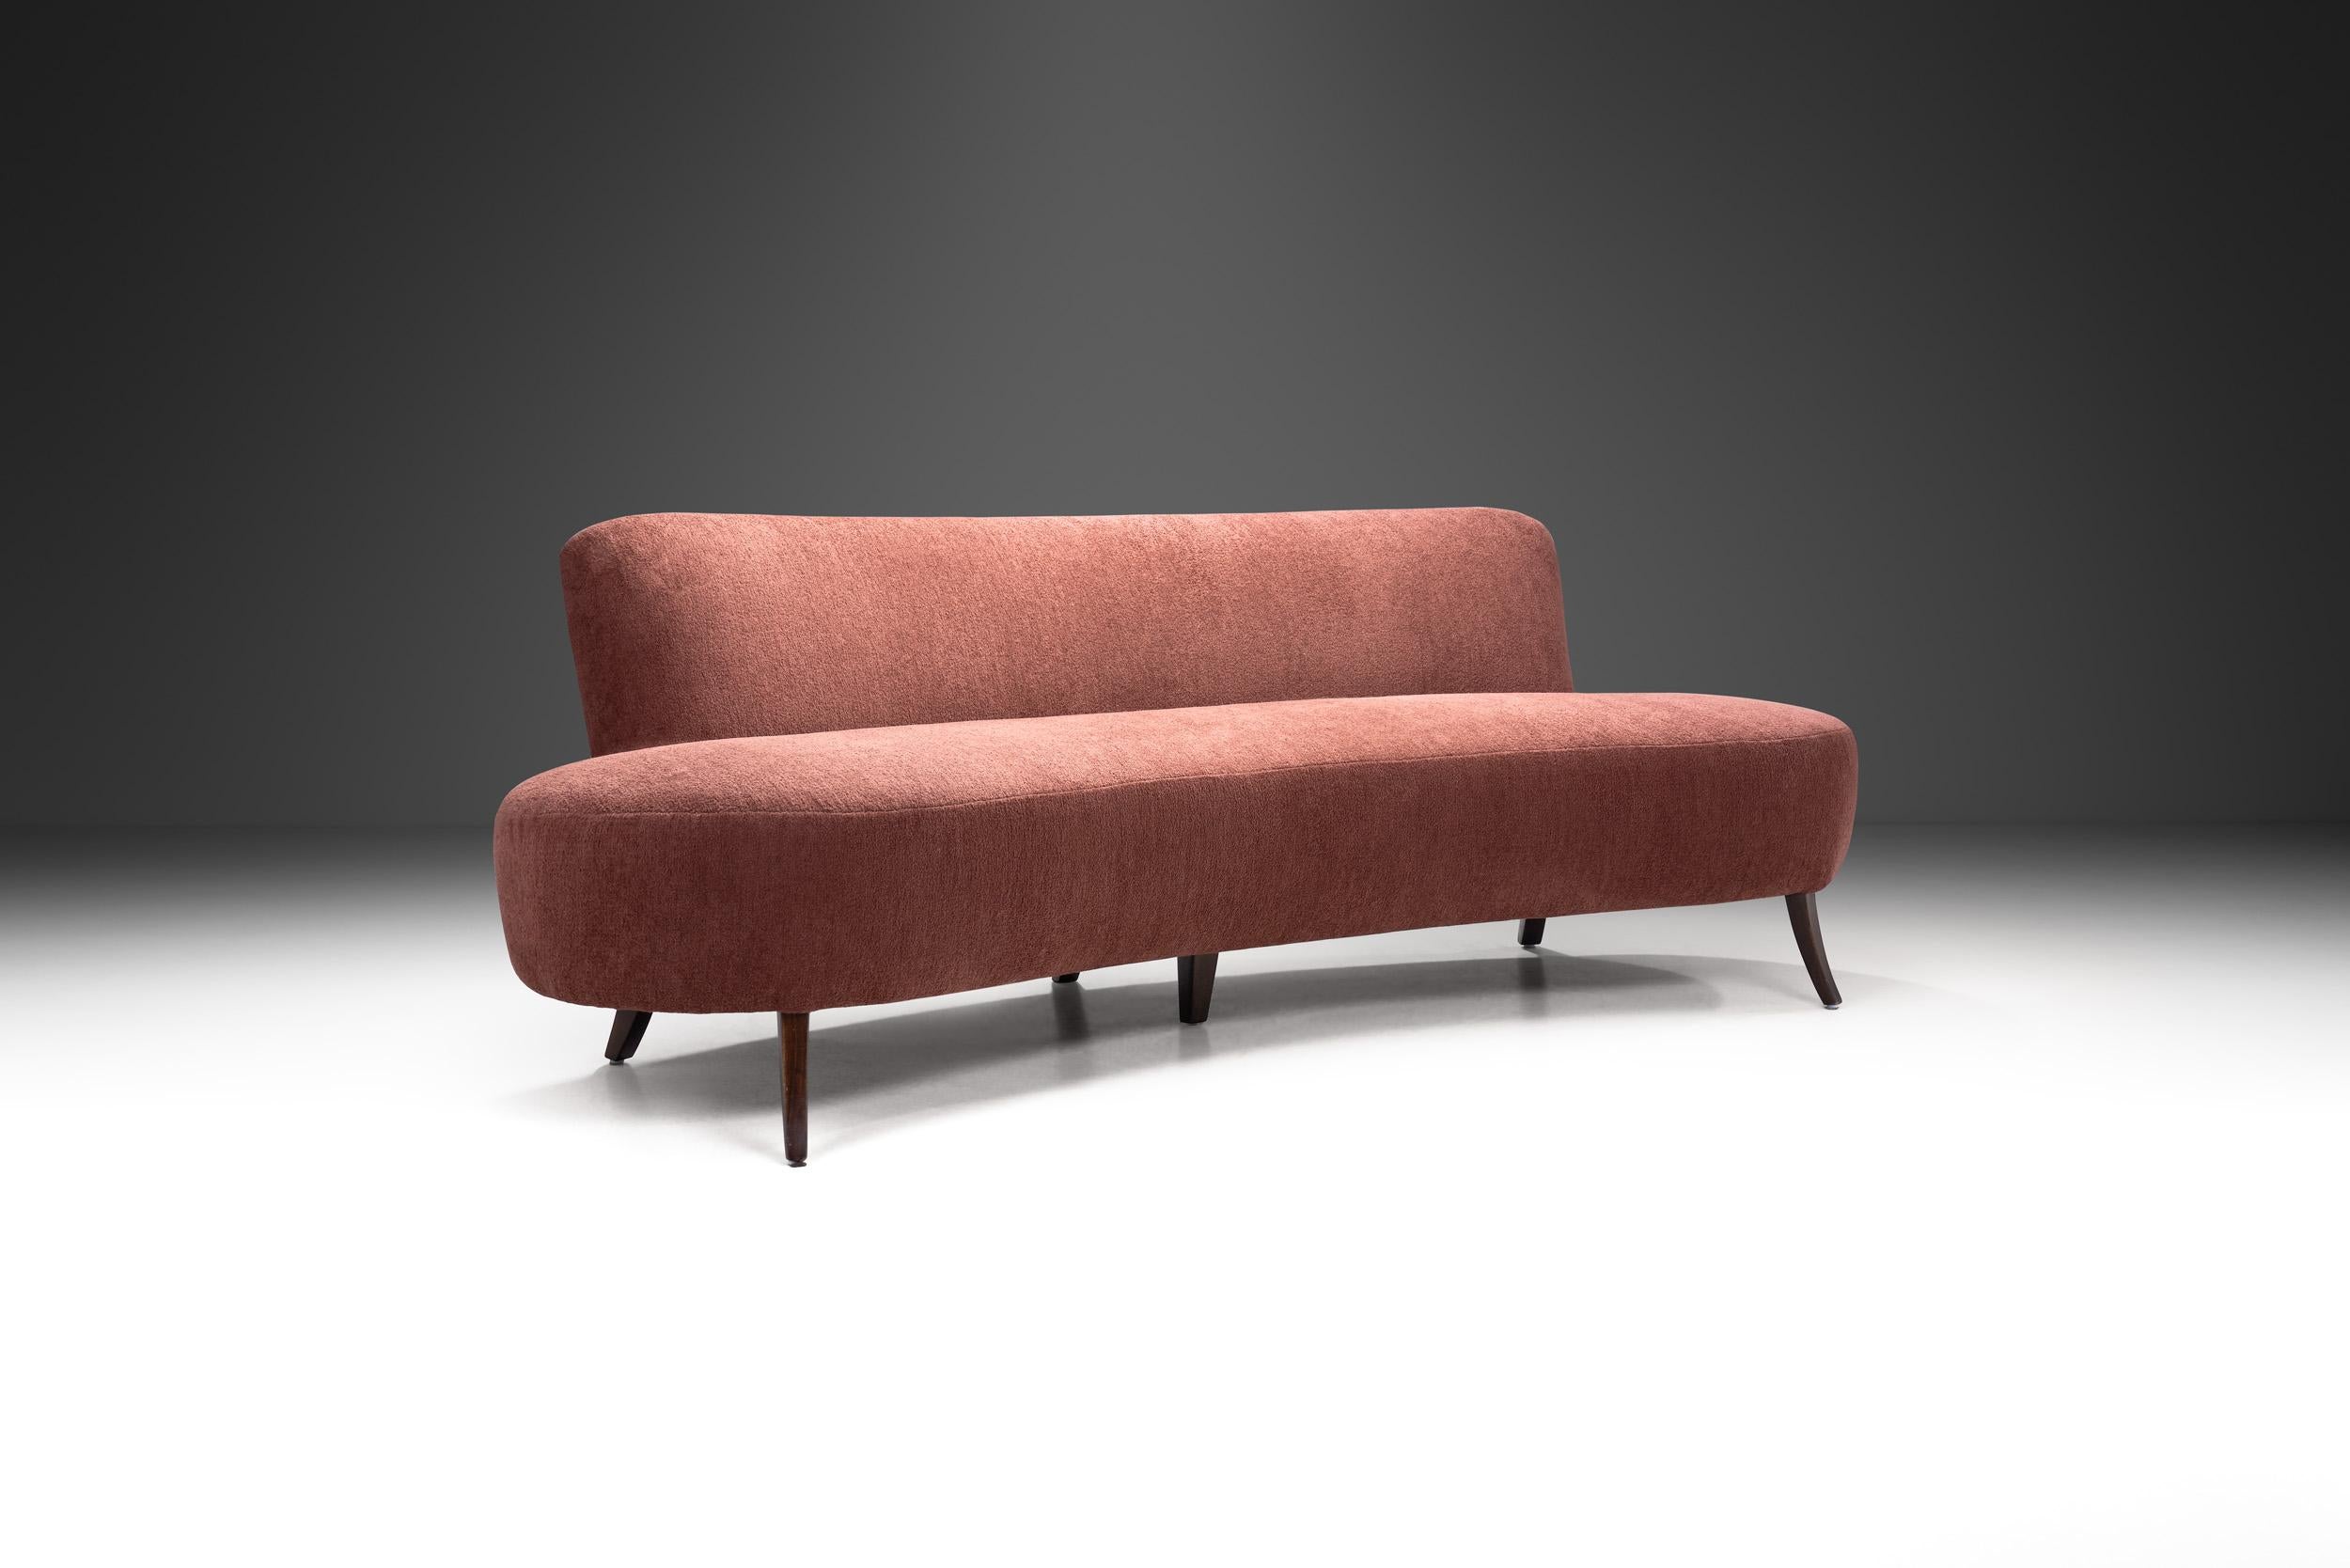 Dieses schöne, geschwungene Sofa hat den erkennbaren Touch der europäischen Moderne: exquisite MATERIALIEN, handwerkliches Können und eine elegant geschwungene Form, weshalb dieser Sofatyp oft als 